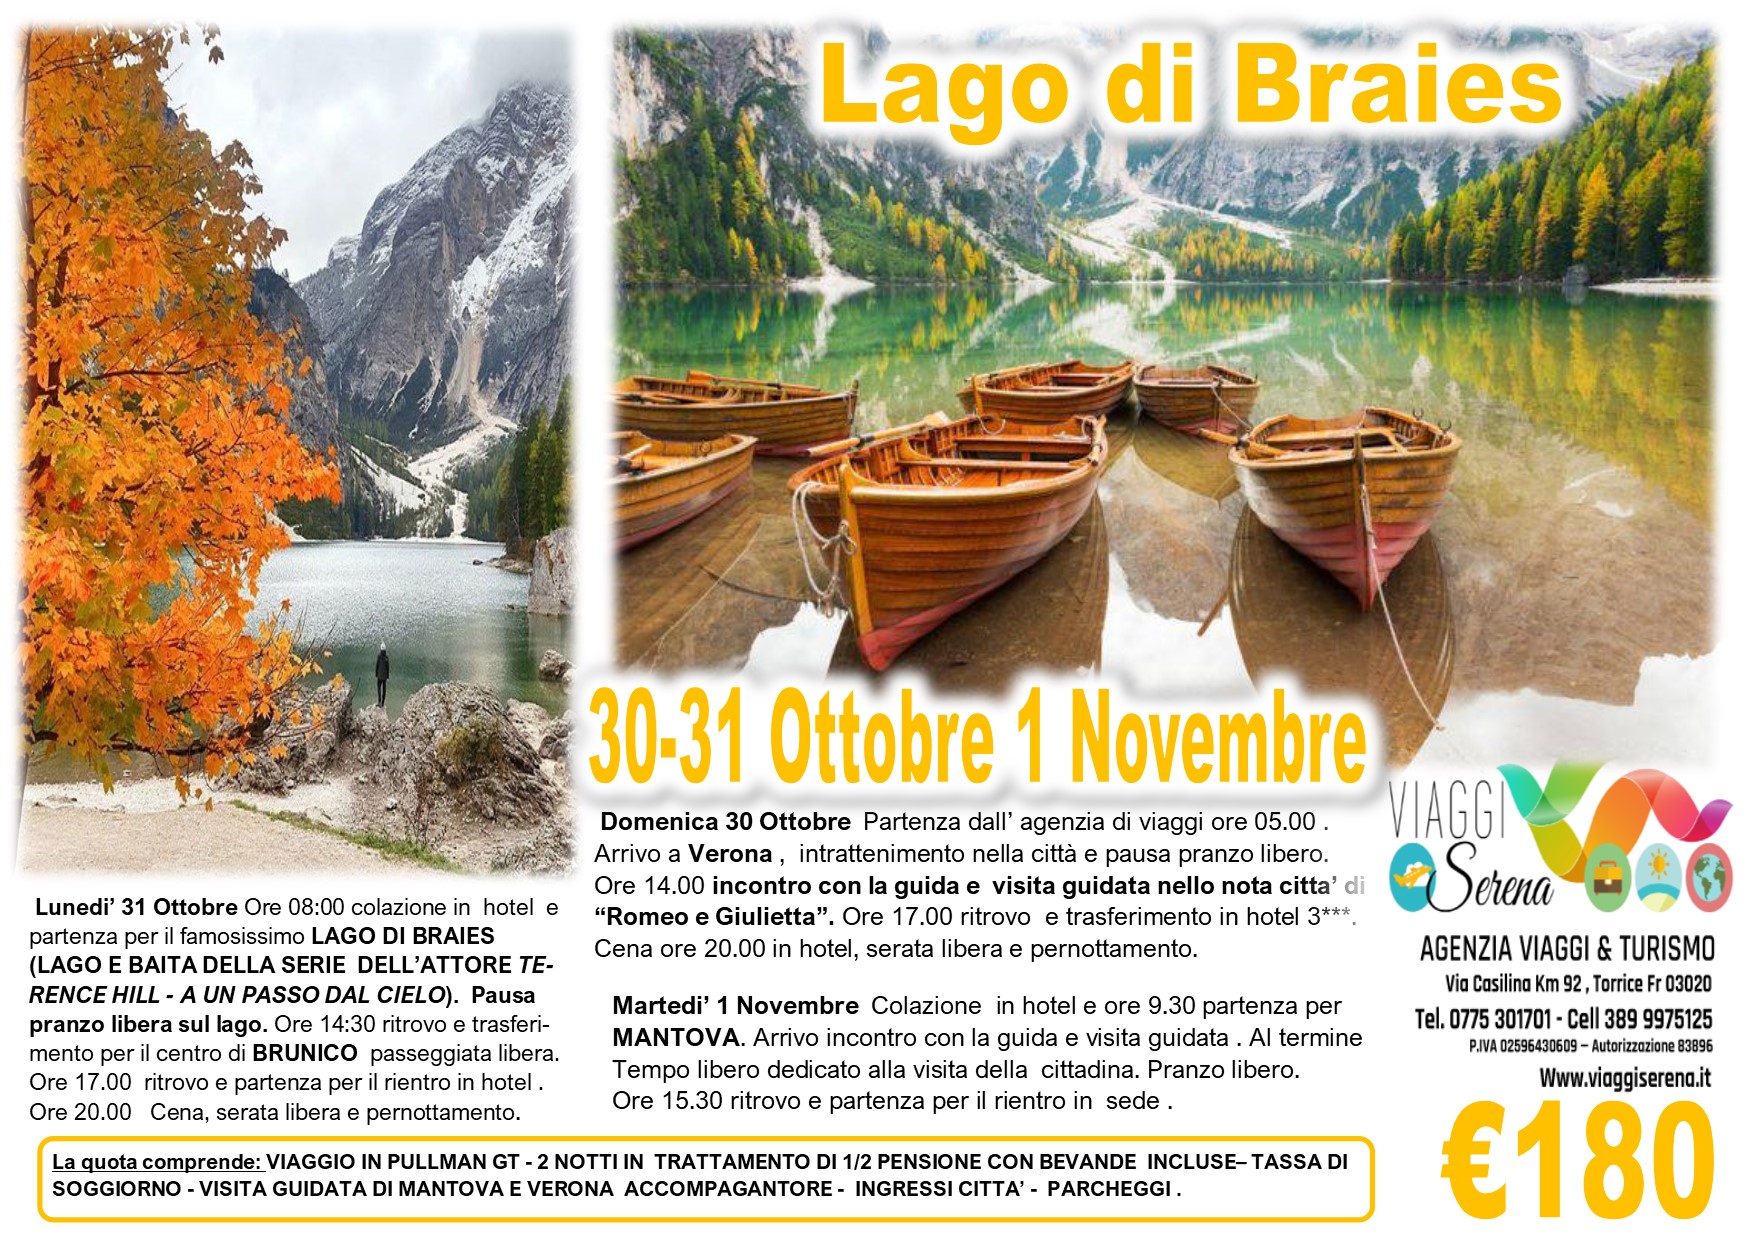 Viaggi di Gruppo: Lago di Braies, Brunico , Verona e Mantova 30-31 Ottobre 1 Novembre € 180,00